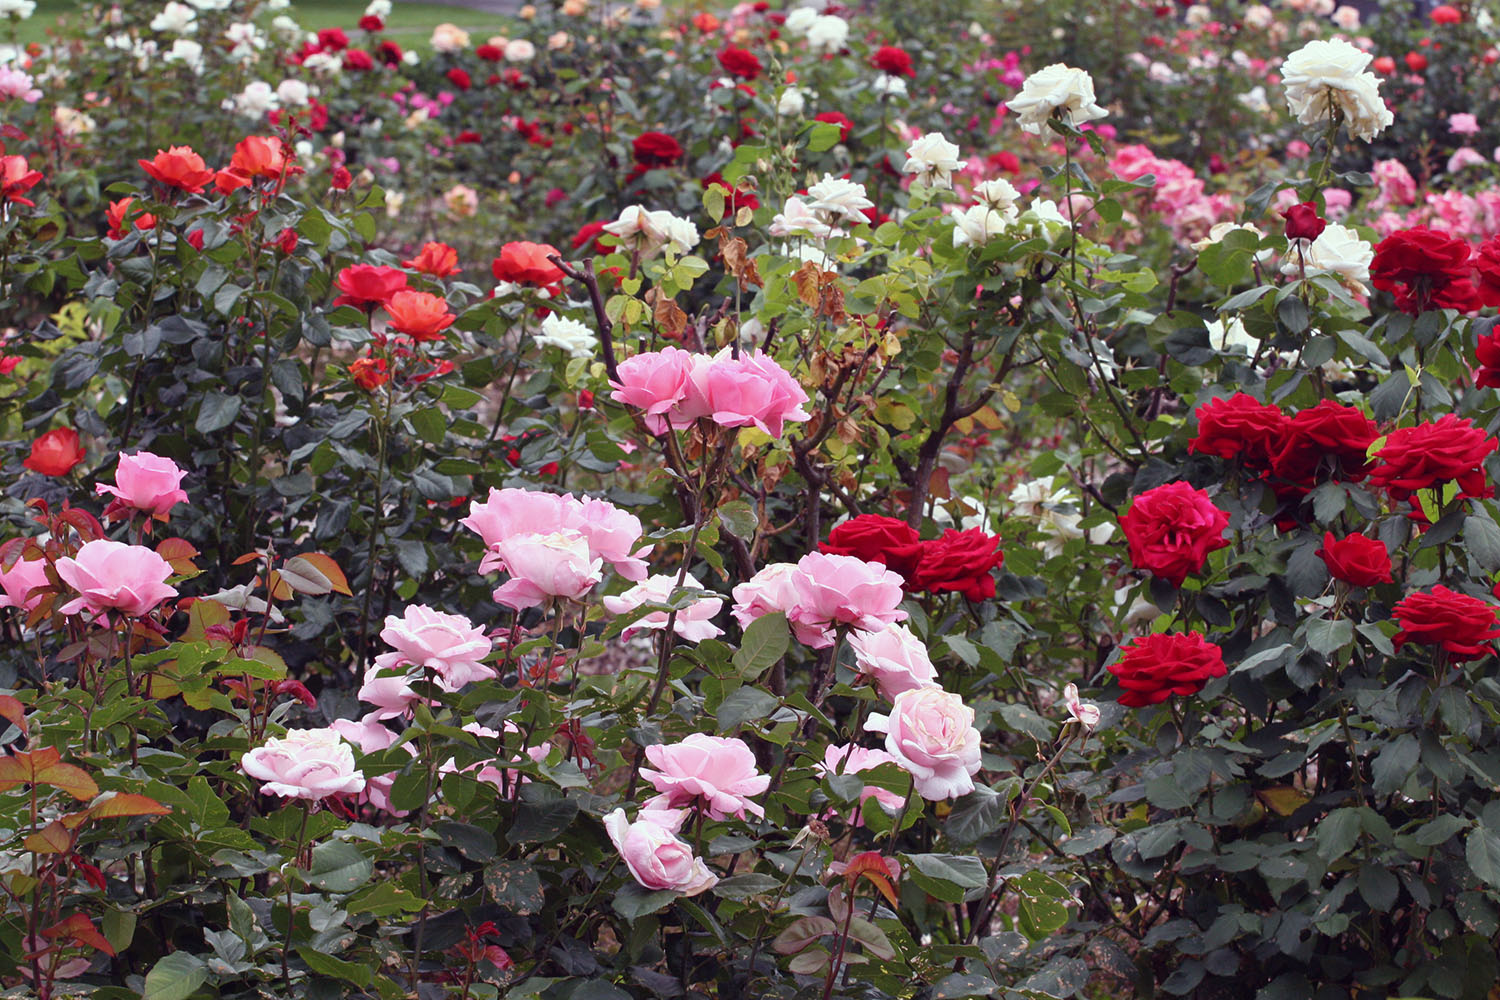 UW rose garden in full bloom